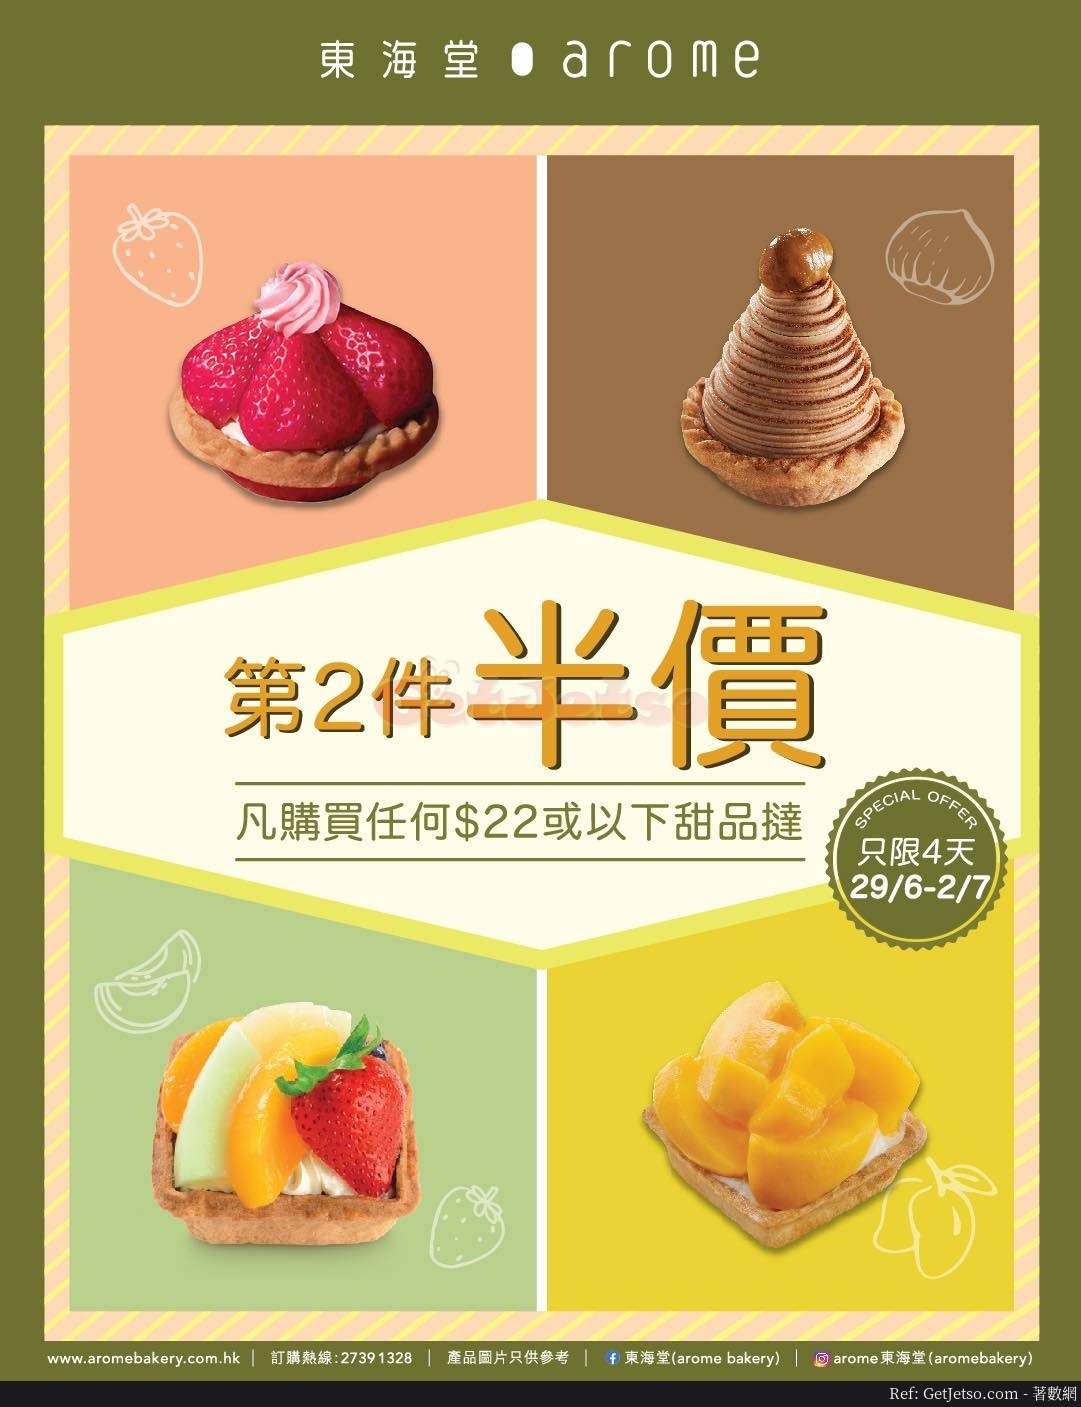 東海堂甜品撻第2件半價優惠(至20年7月2日)圖片1